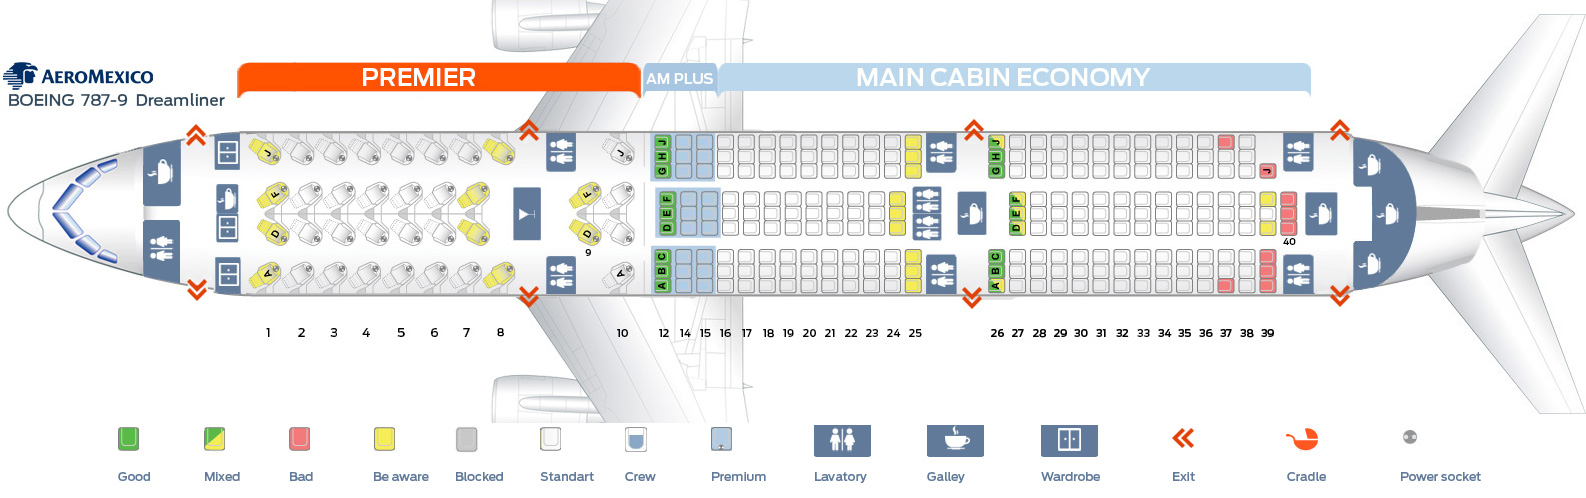 boeing 787 seating plan